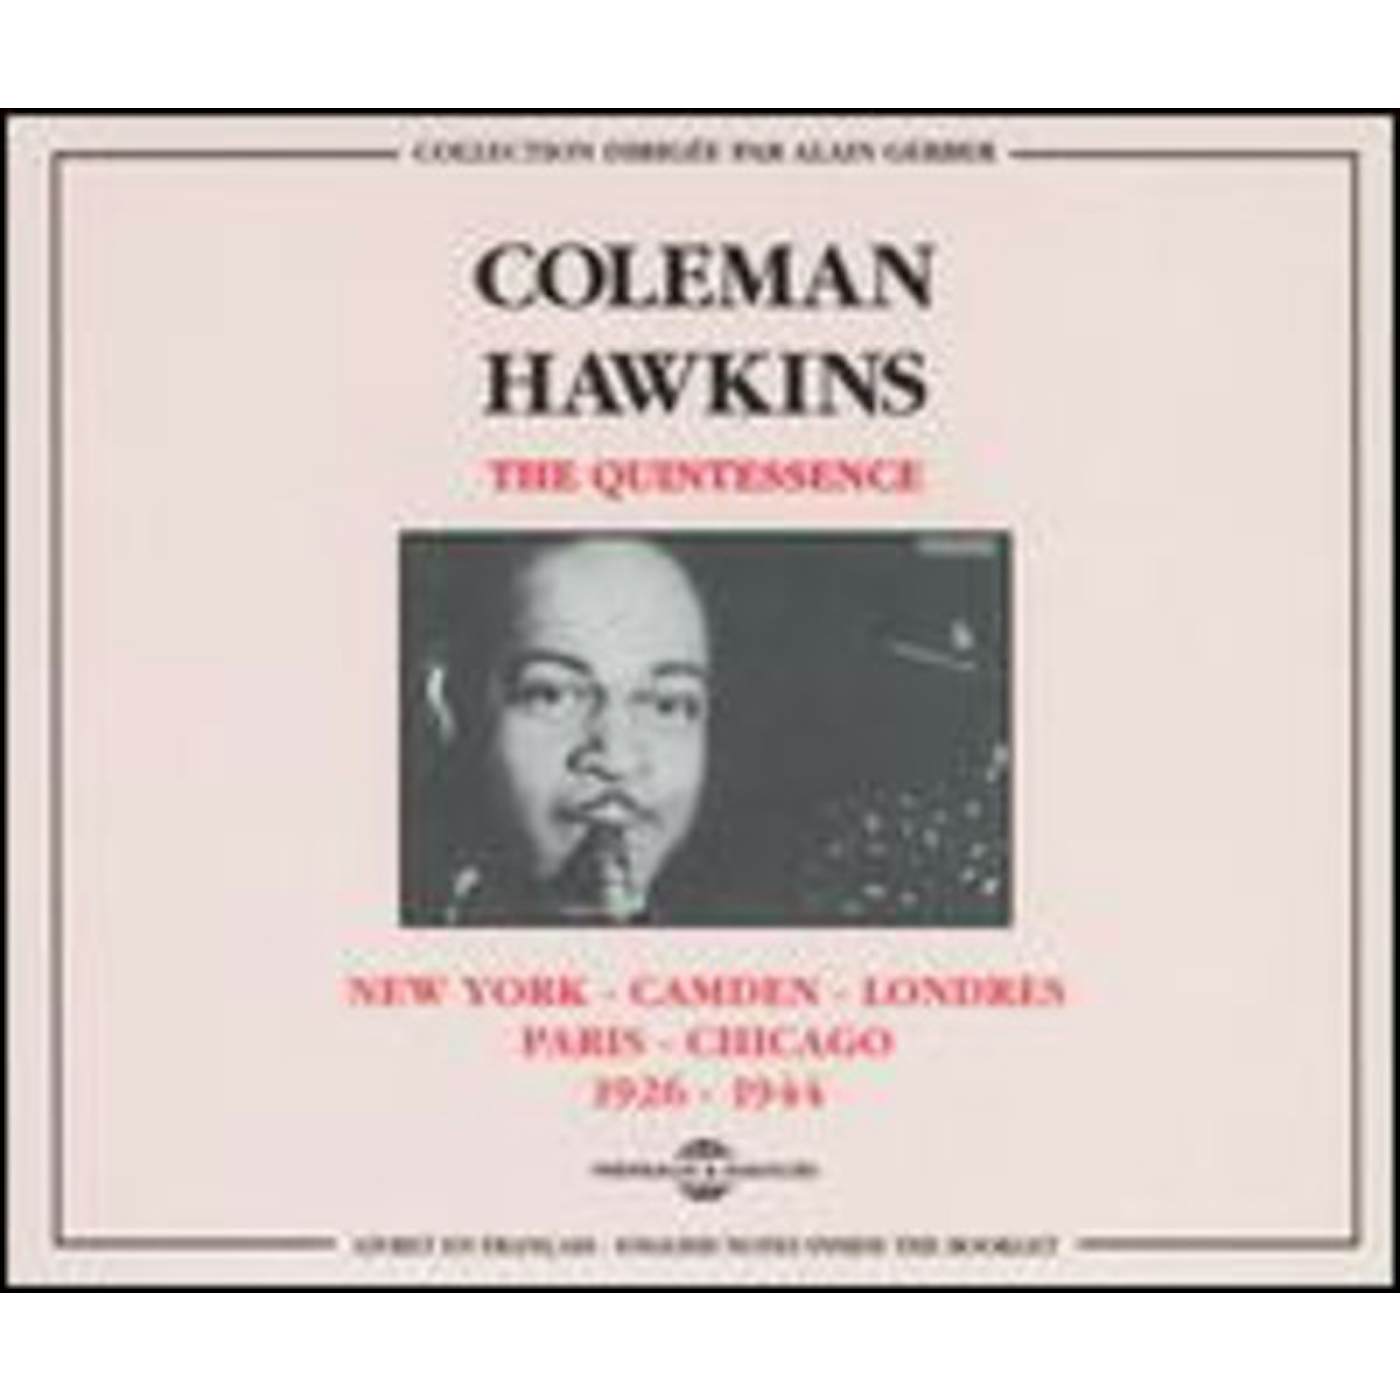 Coleman Hawkins NEW YORK CAMDEN LONDRES PARIS CHICAGO 1926-1944 CD